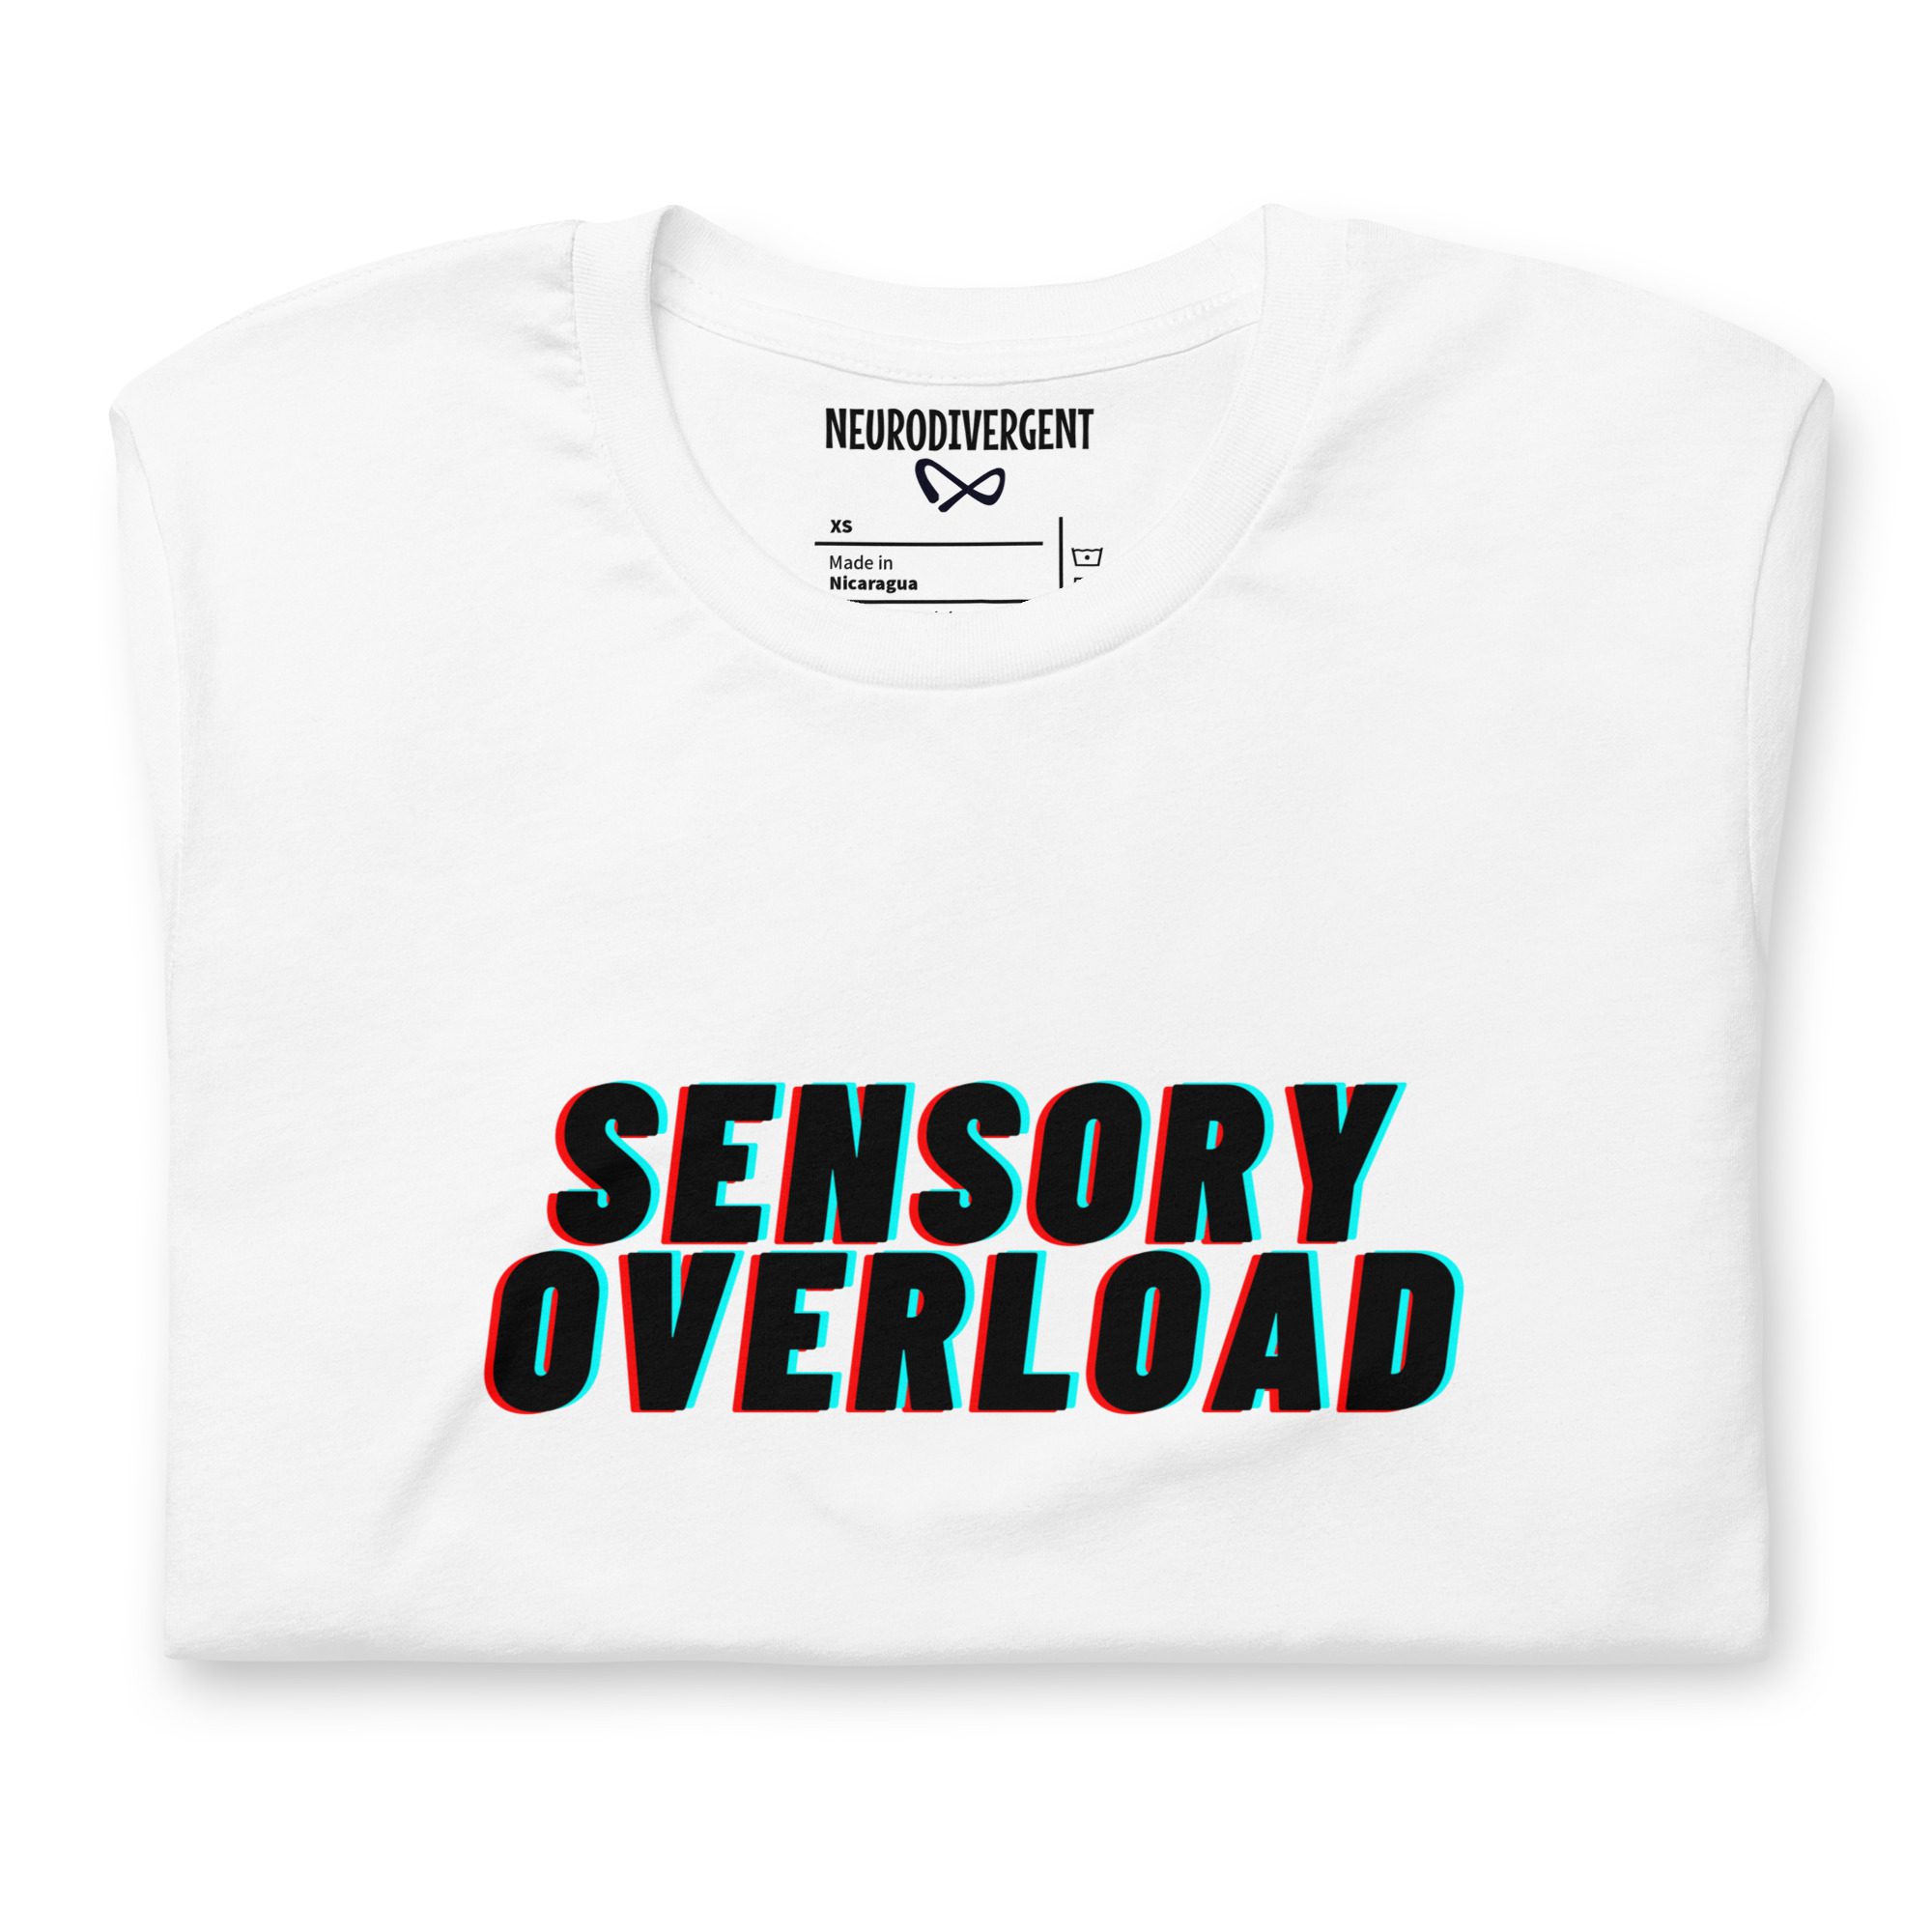 SENSORY OVERLOAD Unisex T-shirt